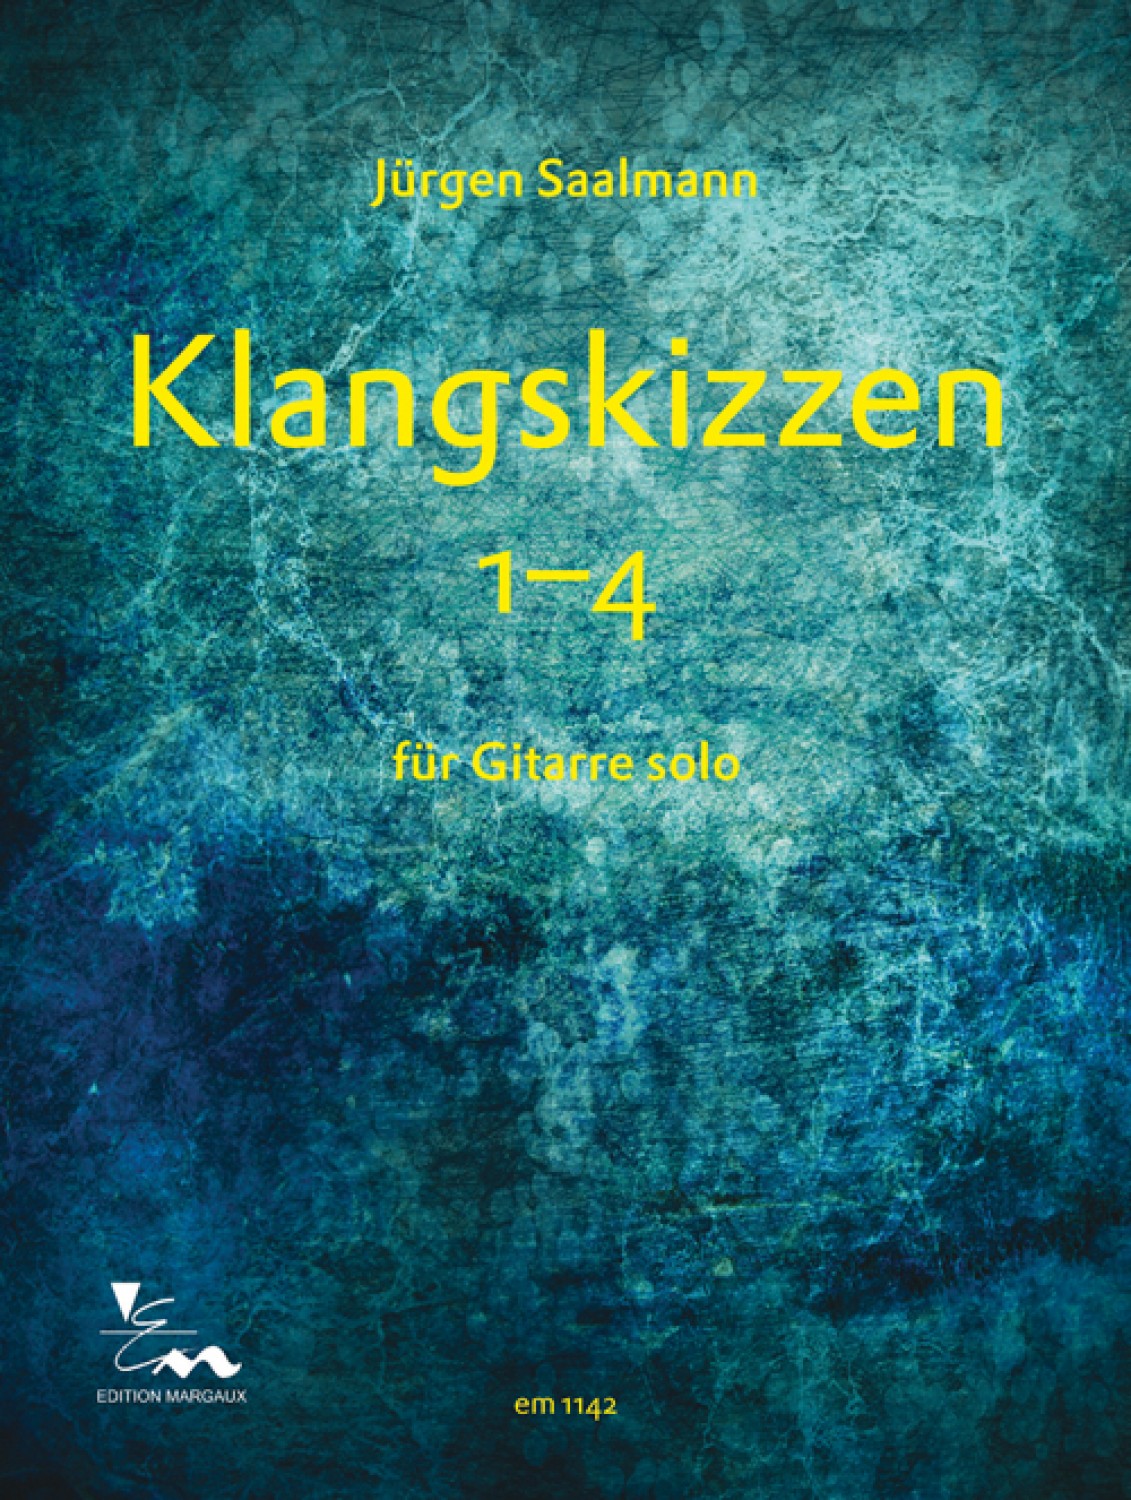 Klangskizzen 1-4